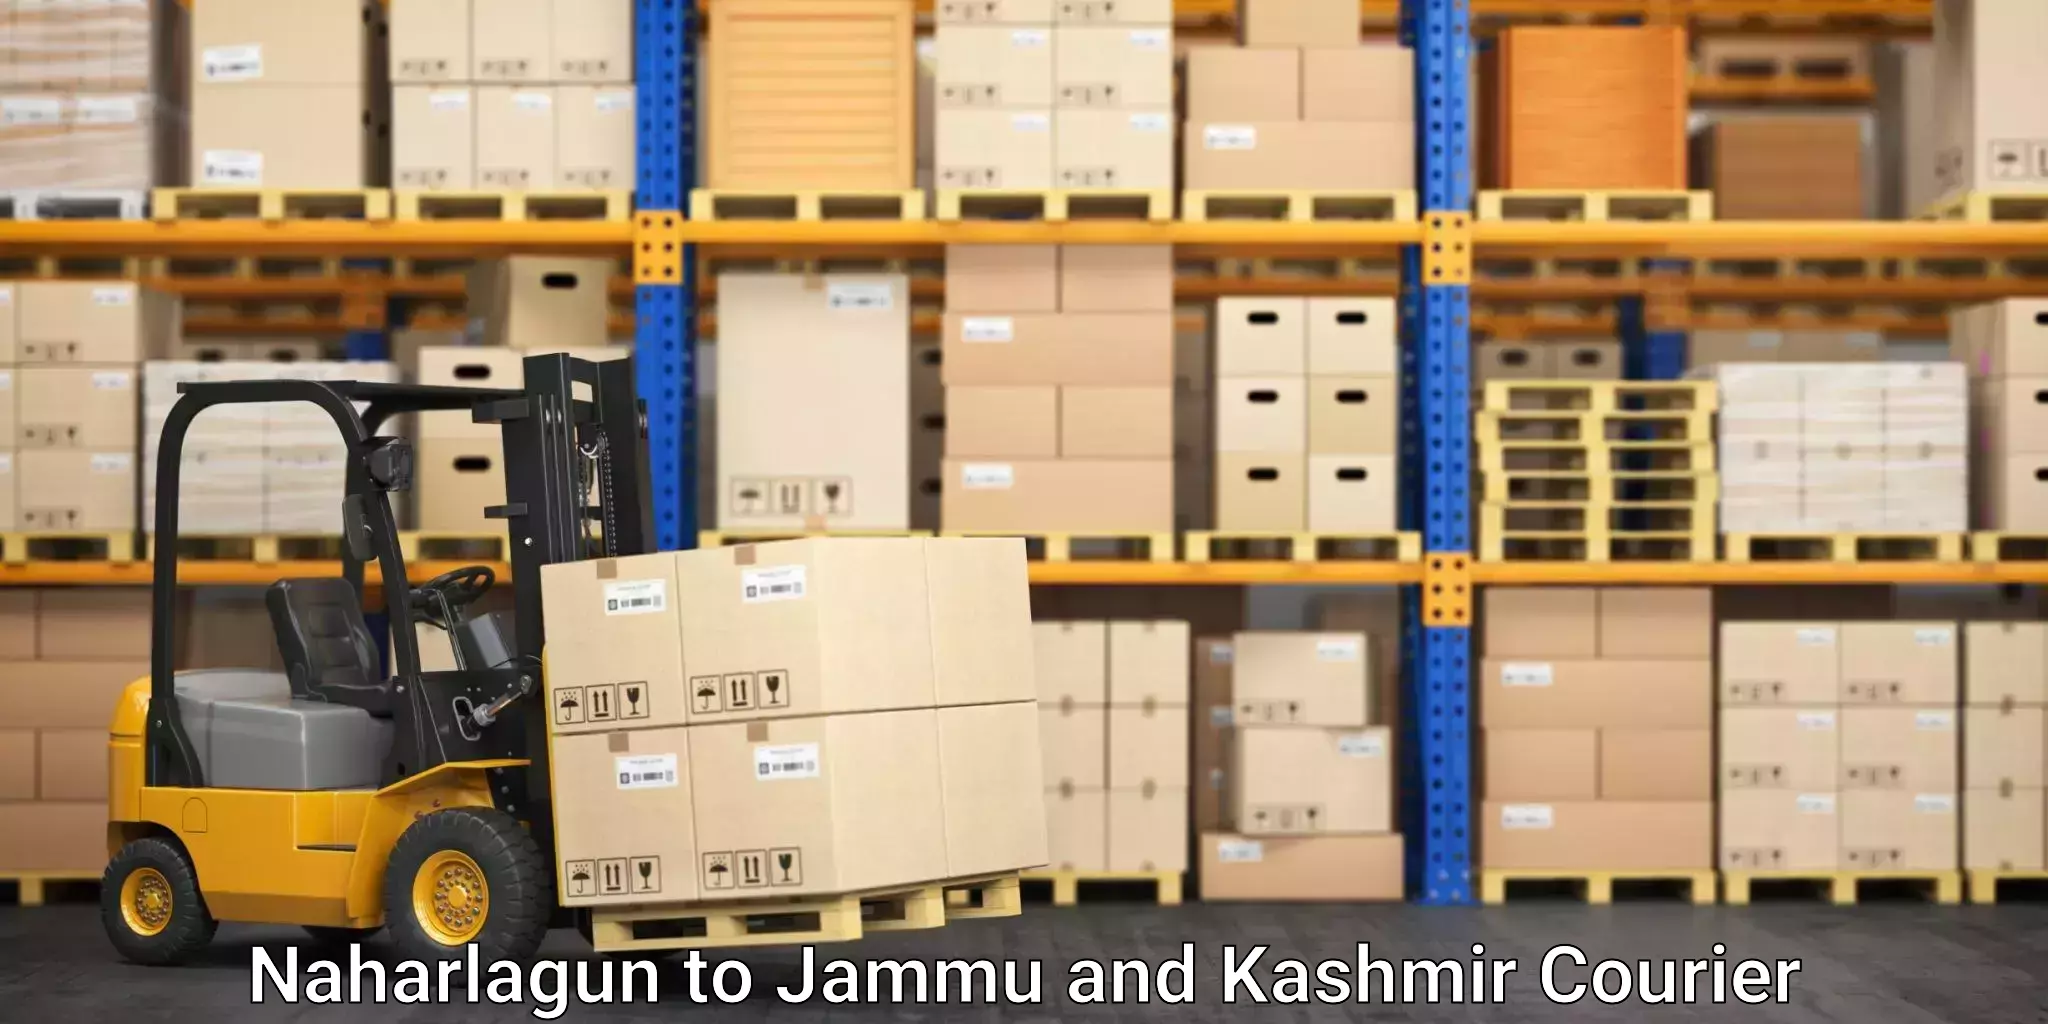 Cargo courier service Naharlagun to Jammu and Kashmir